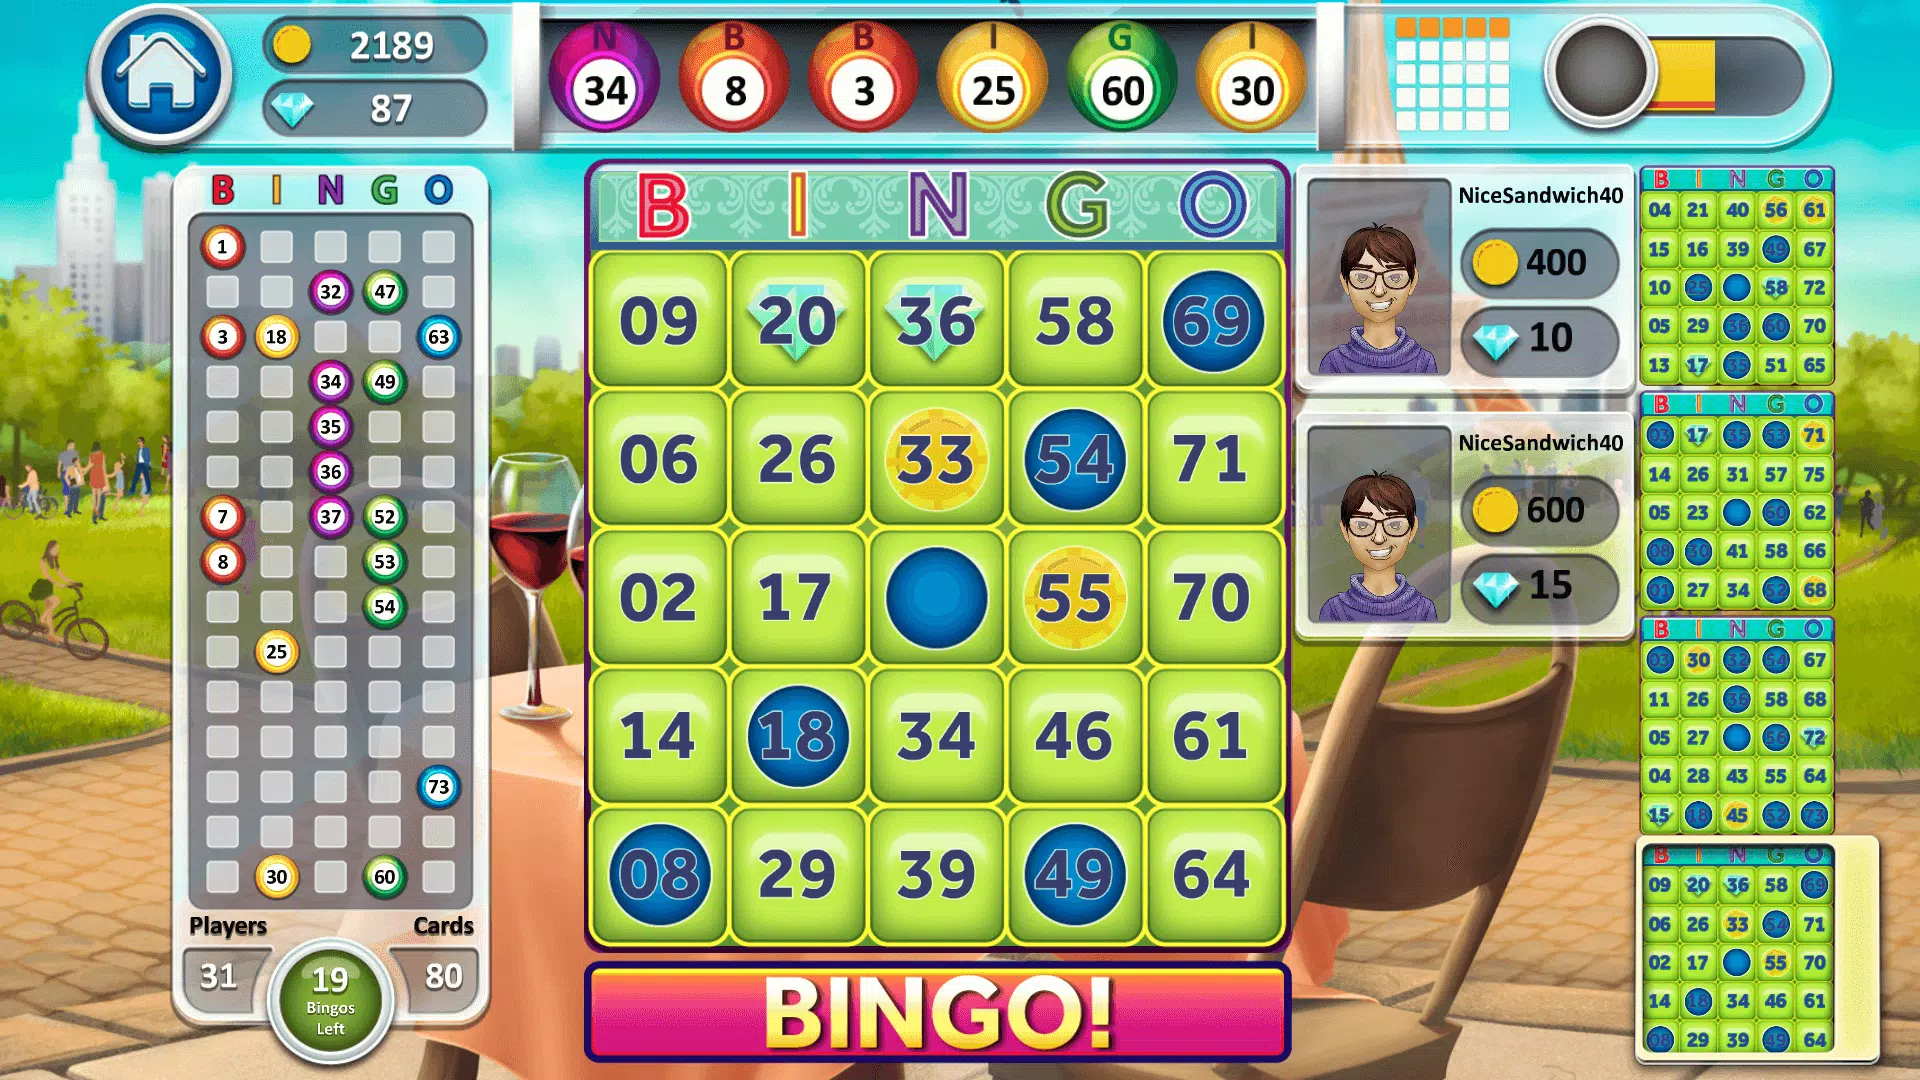 Free Bingo Games Online